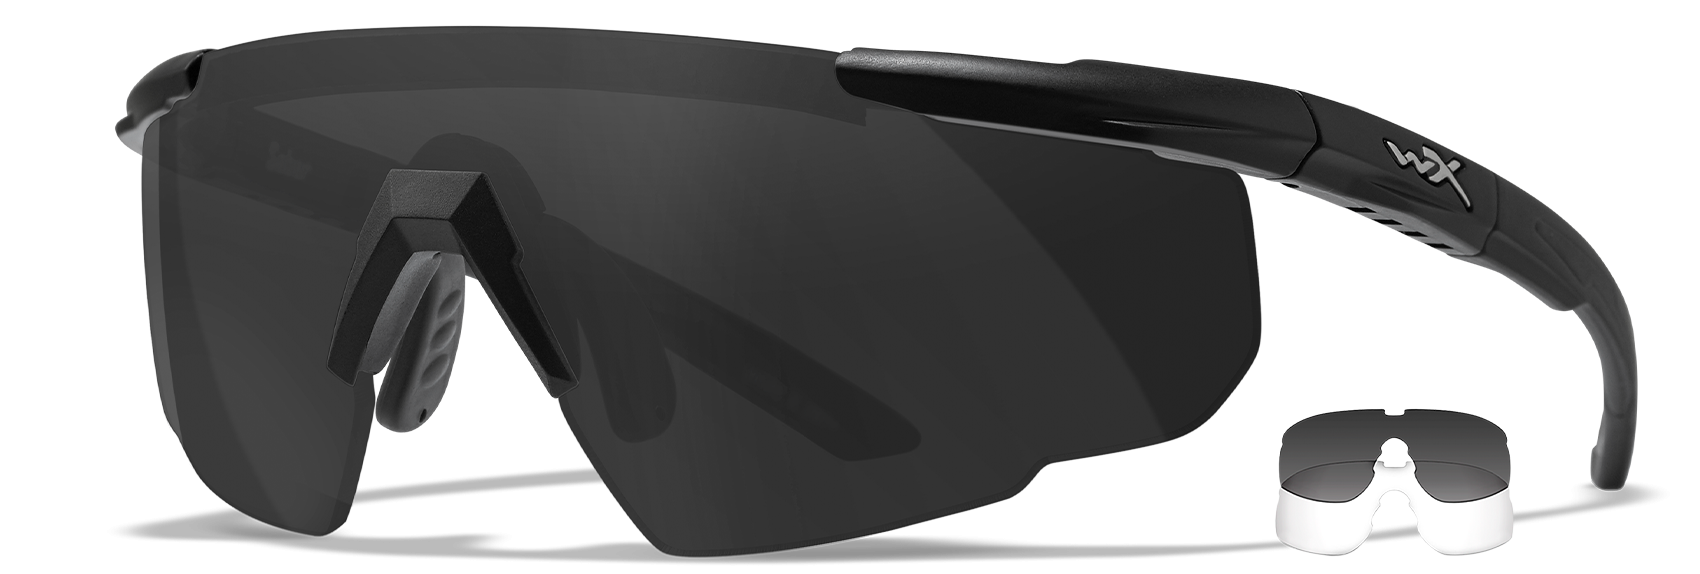 Очки баллистические Wiley-X Saber Advanced, черный / прозрачный + серый